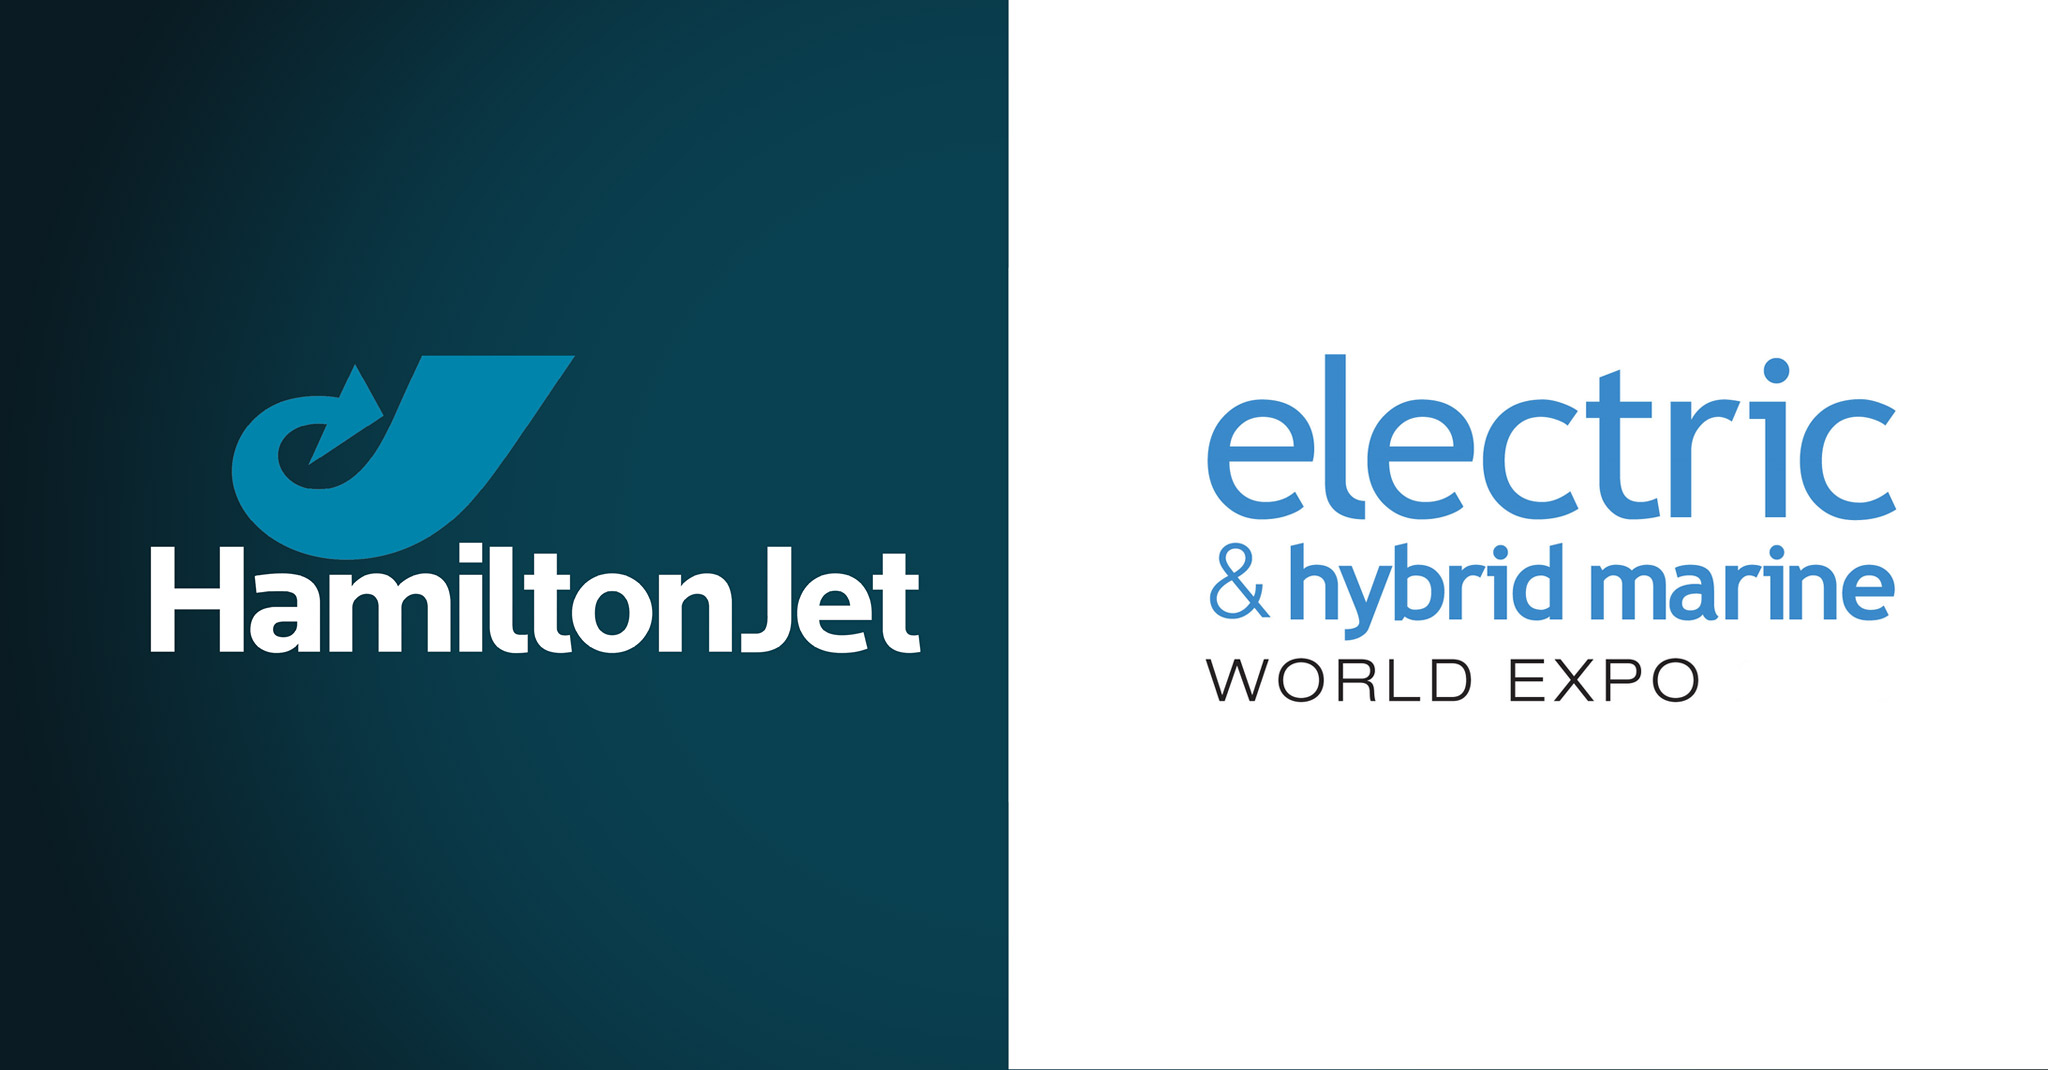 Lire la suite à propos de l’article HamiltonJet, exposant au Electric & Hybrid Marine World Expo 2020 !